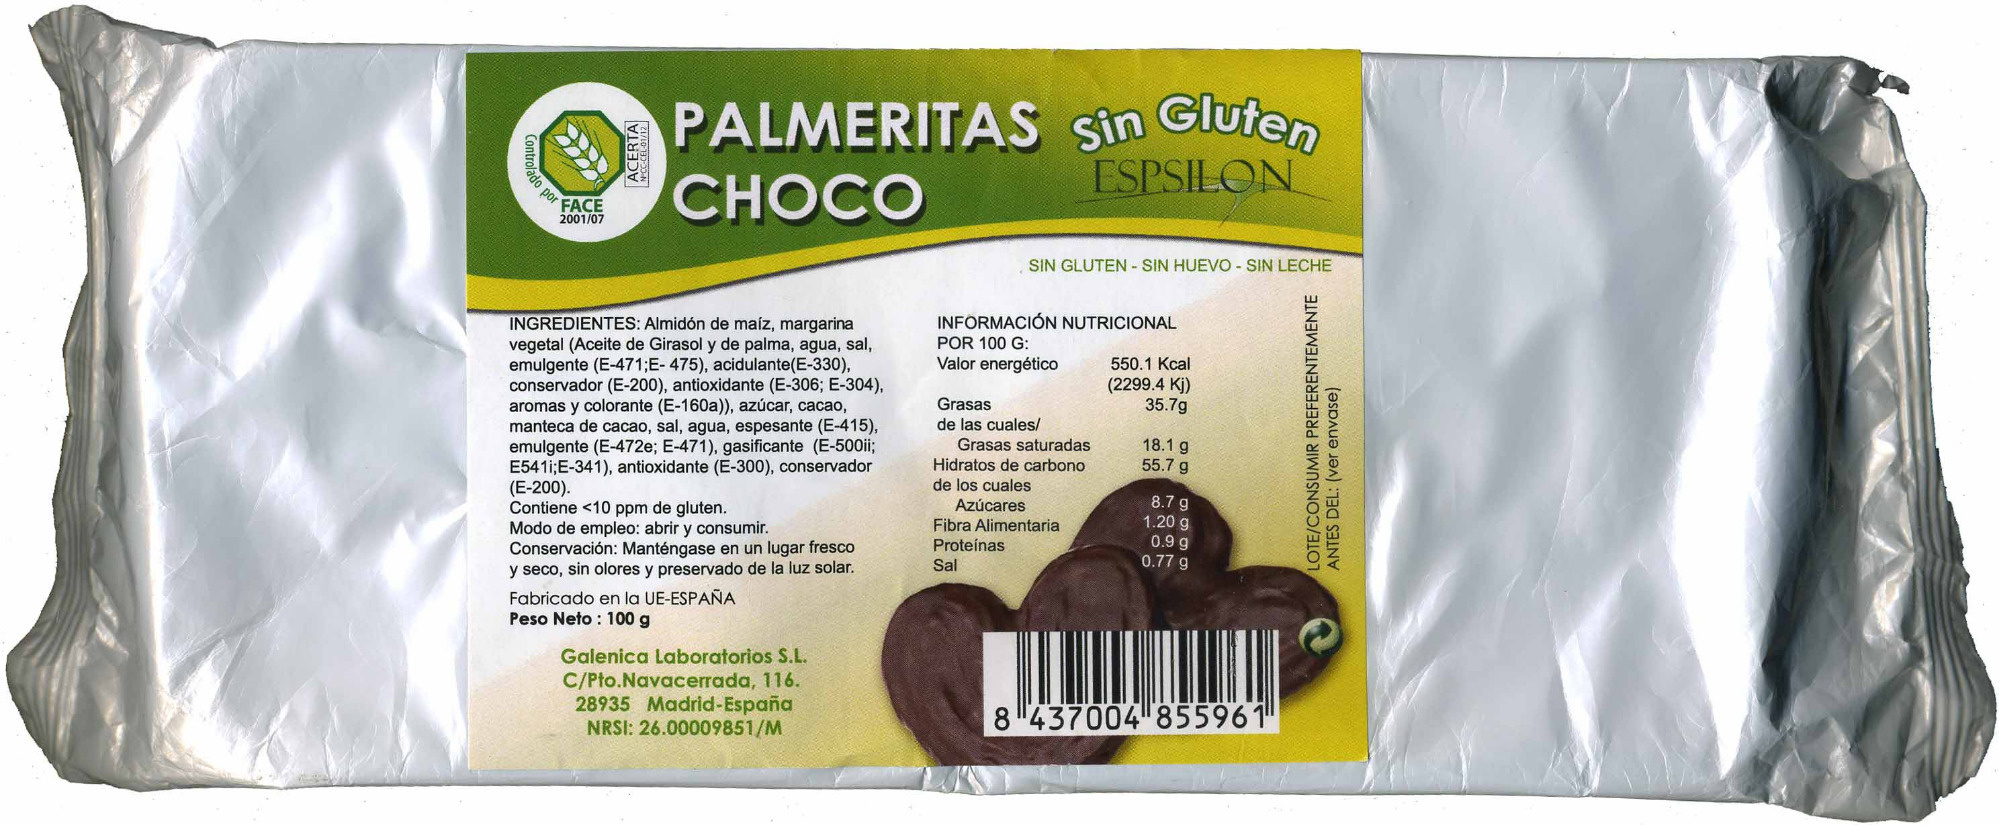 Palmeritas choco sin gluten - Product - es